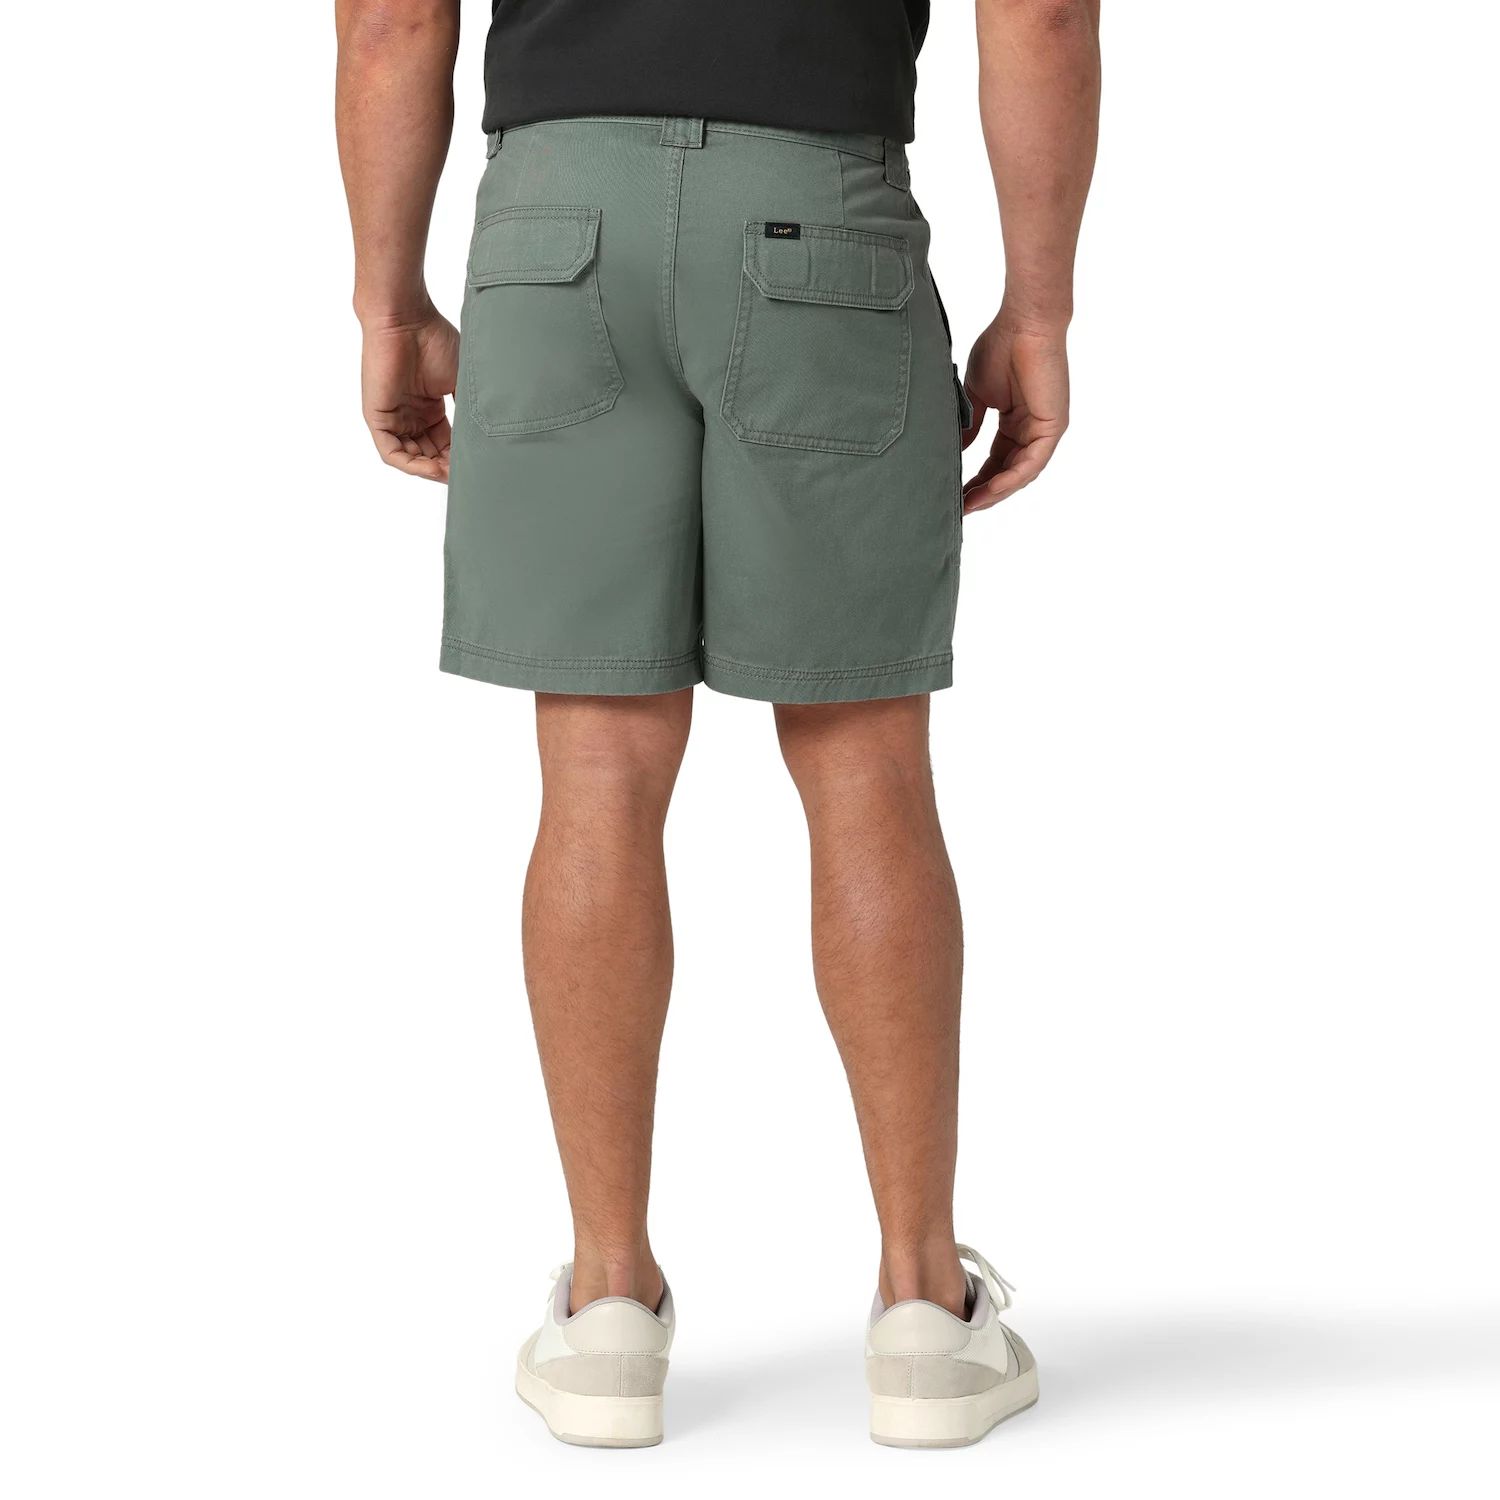 Мужские шорты карго Lee Side Elastic шириной 7,5 дюйма мужские шорты карго свободного покроя из неэластичного материала шириной 9 5 дюйма levi s